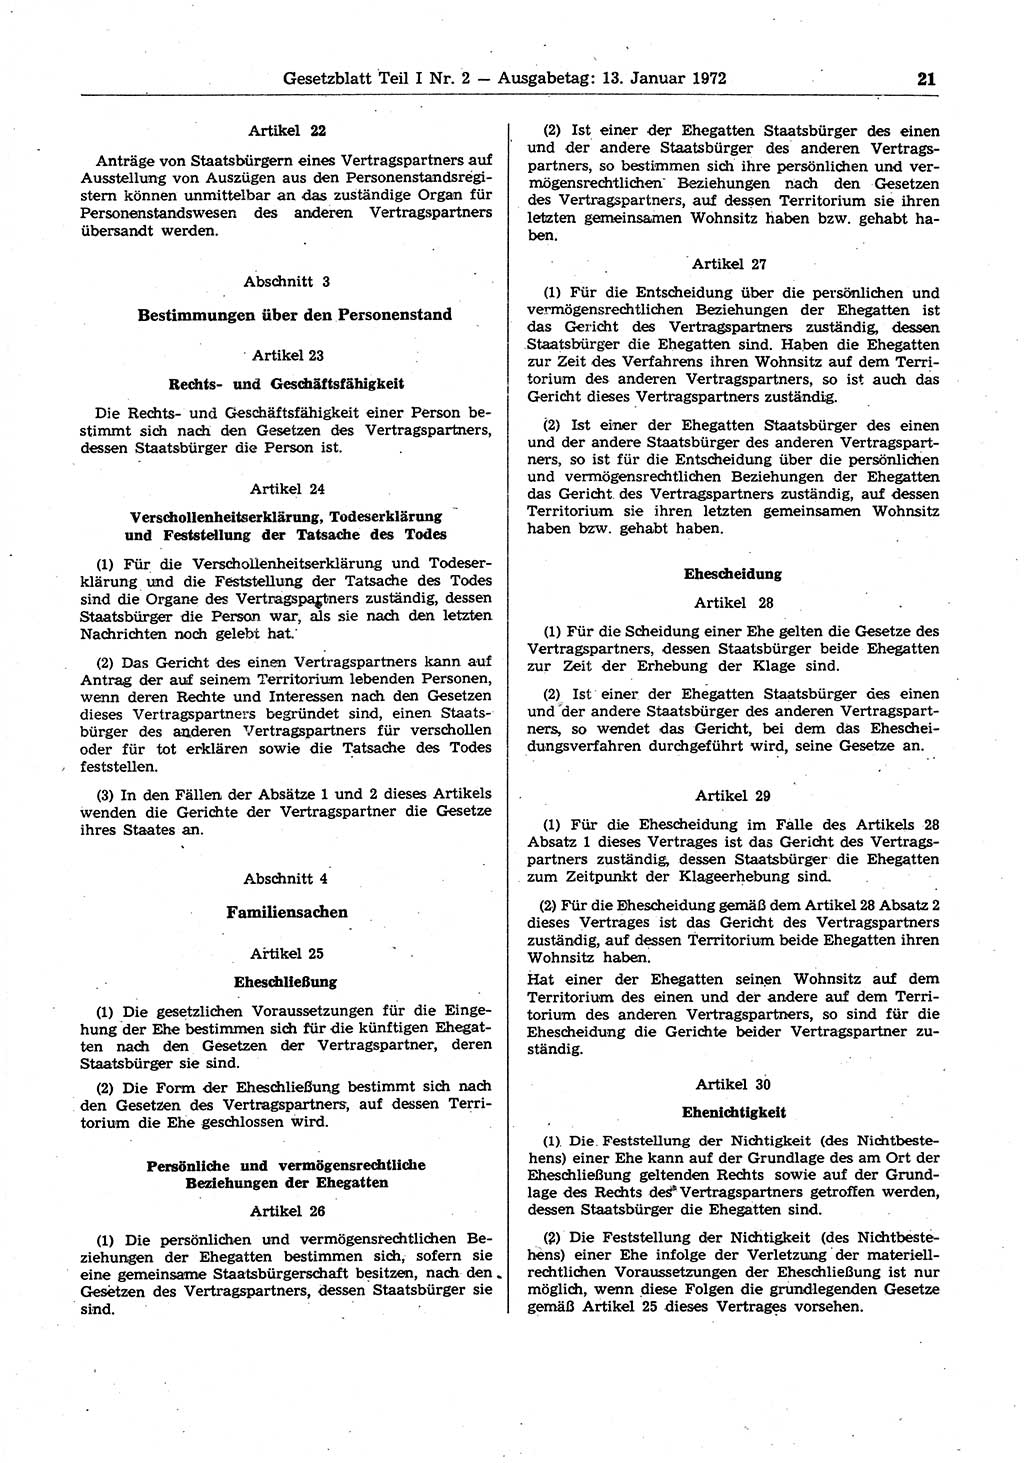 Gesetzblatt (GBl.) der Deutschen Demokratischen Republik (DDR) Teil Ⅰ 1972, Seite 21 (GBl. DDR Ⅰ 1972, S. 21)